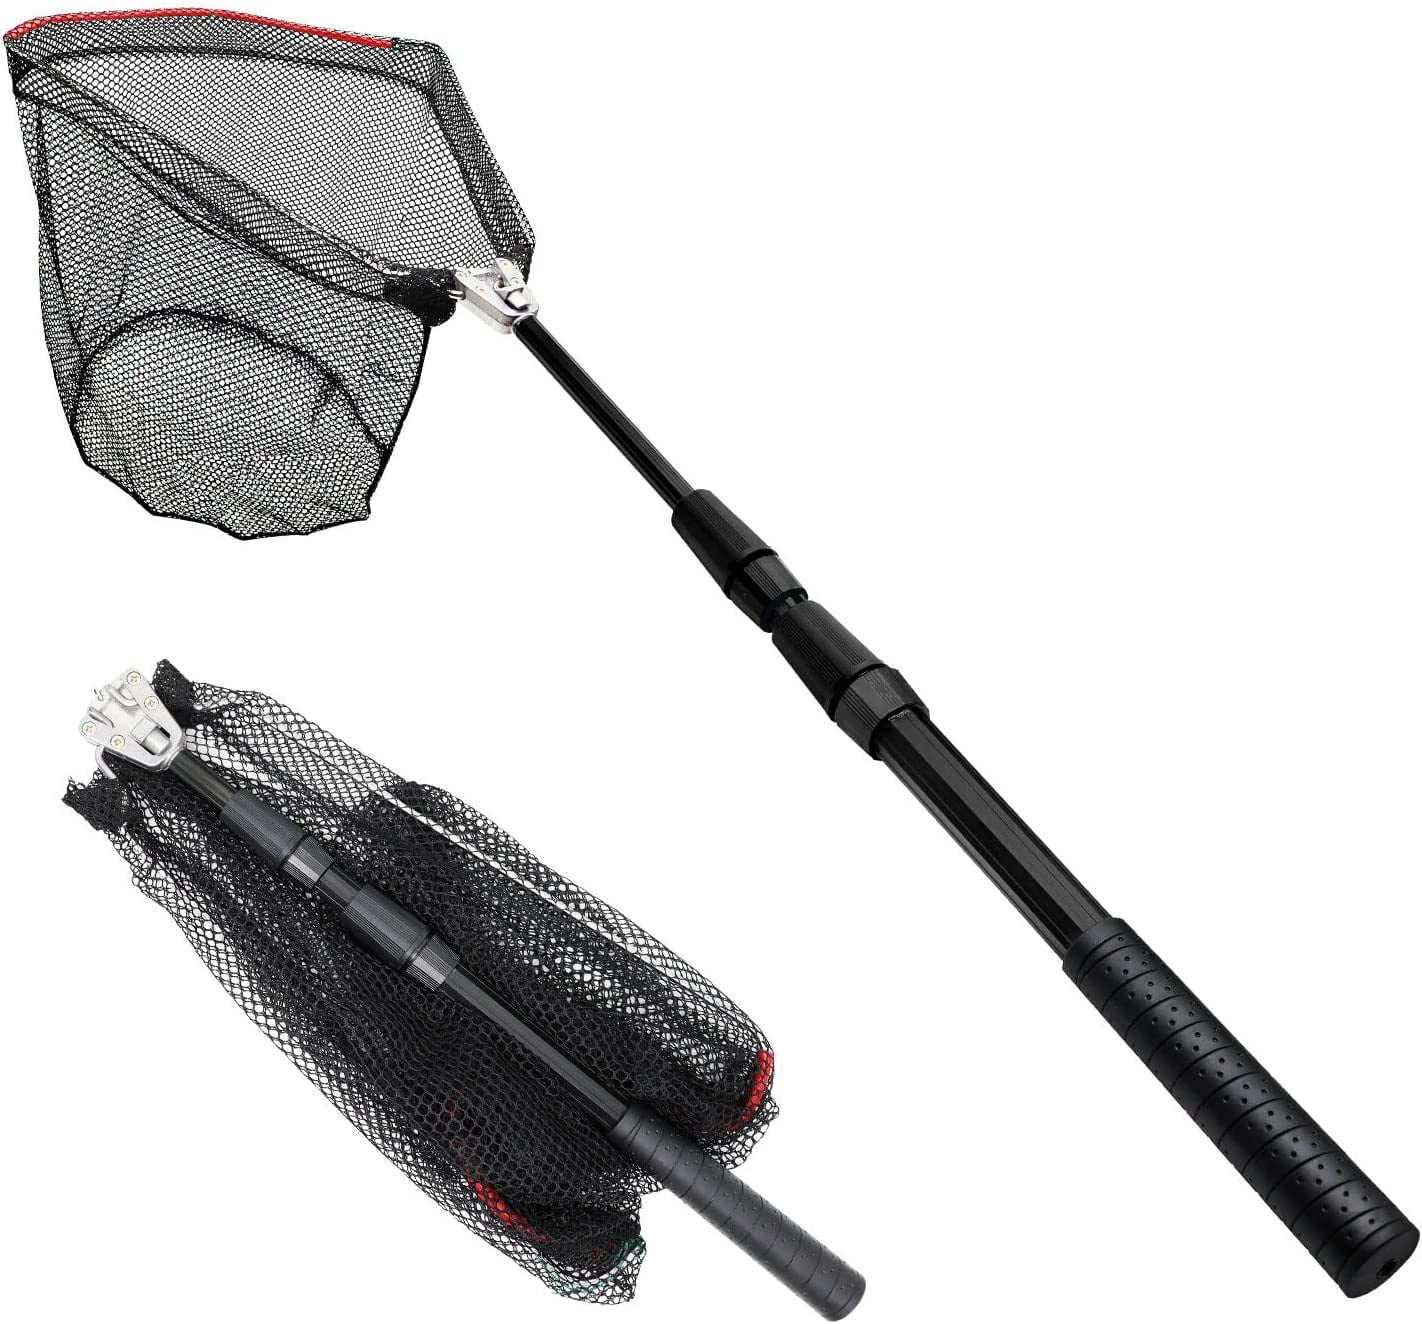  Angoily 10pcs Betta Net Fish Net Fishing Nets Portable